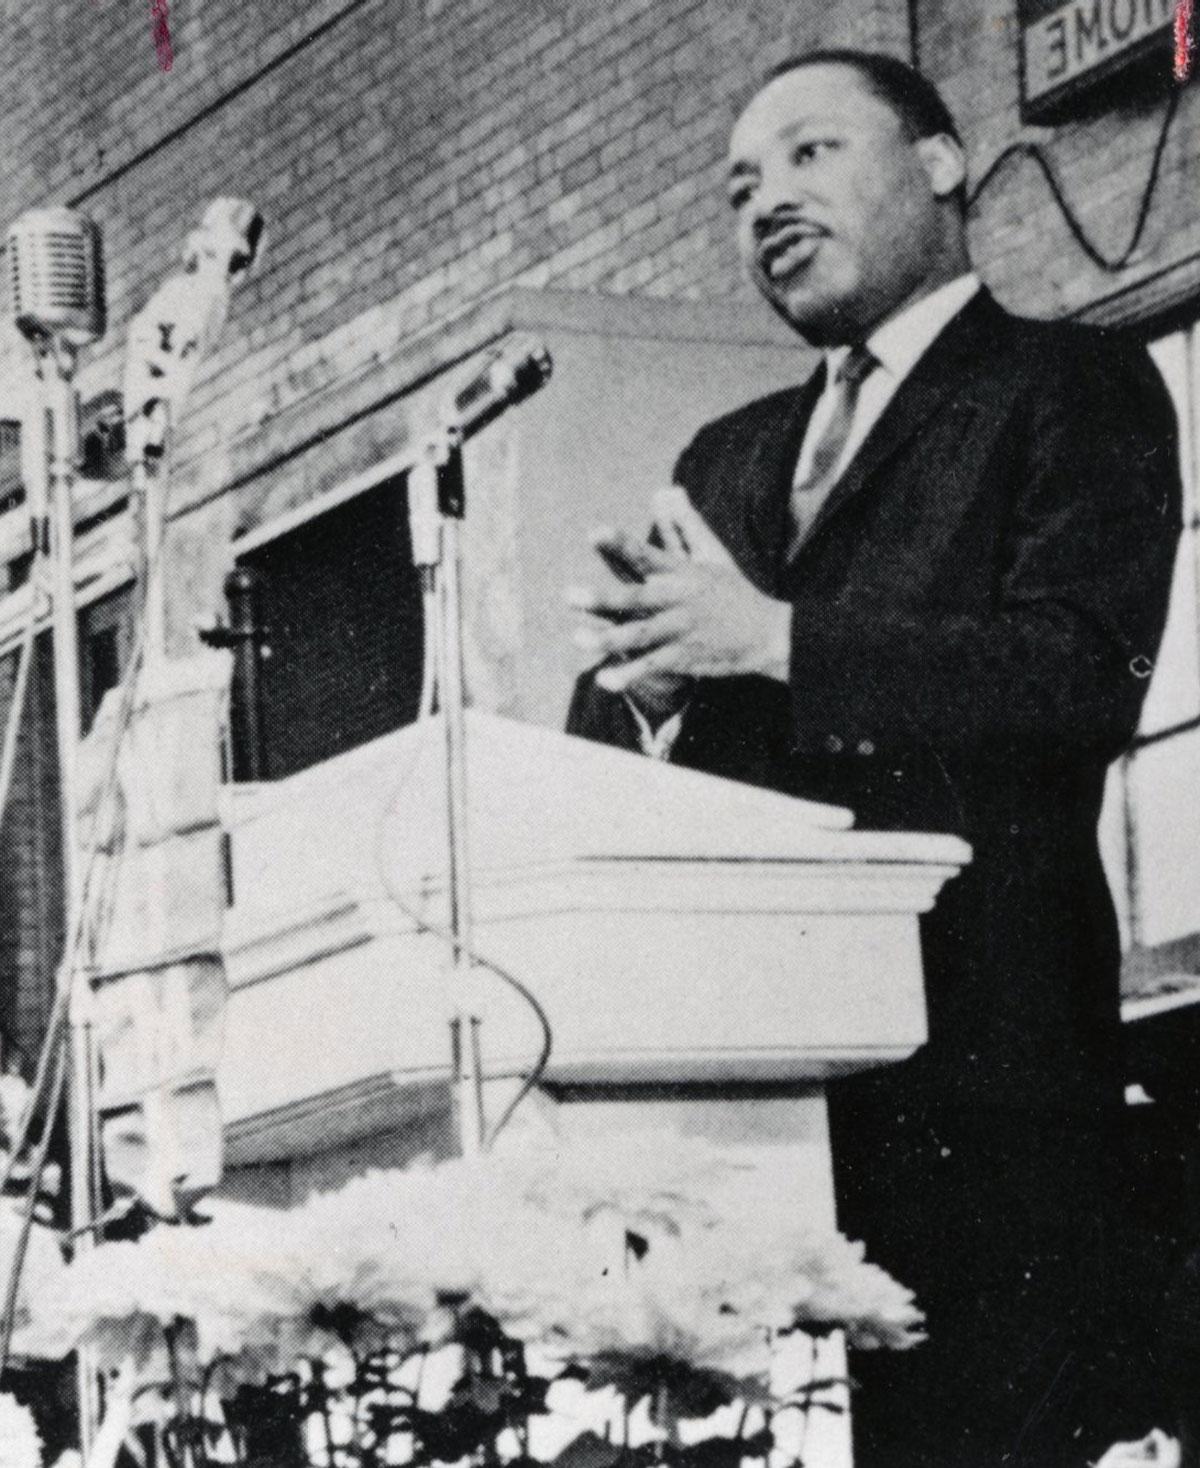 Dr. Martin Luther King Jr. speaks at ONU